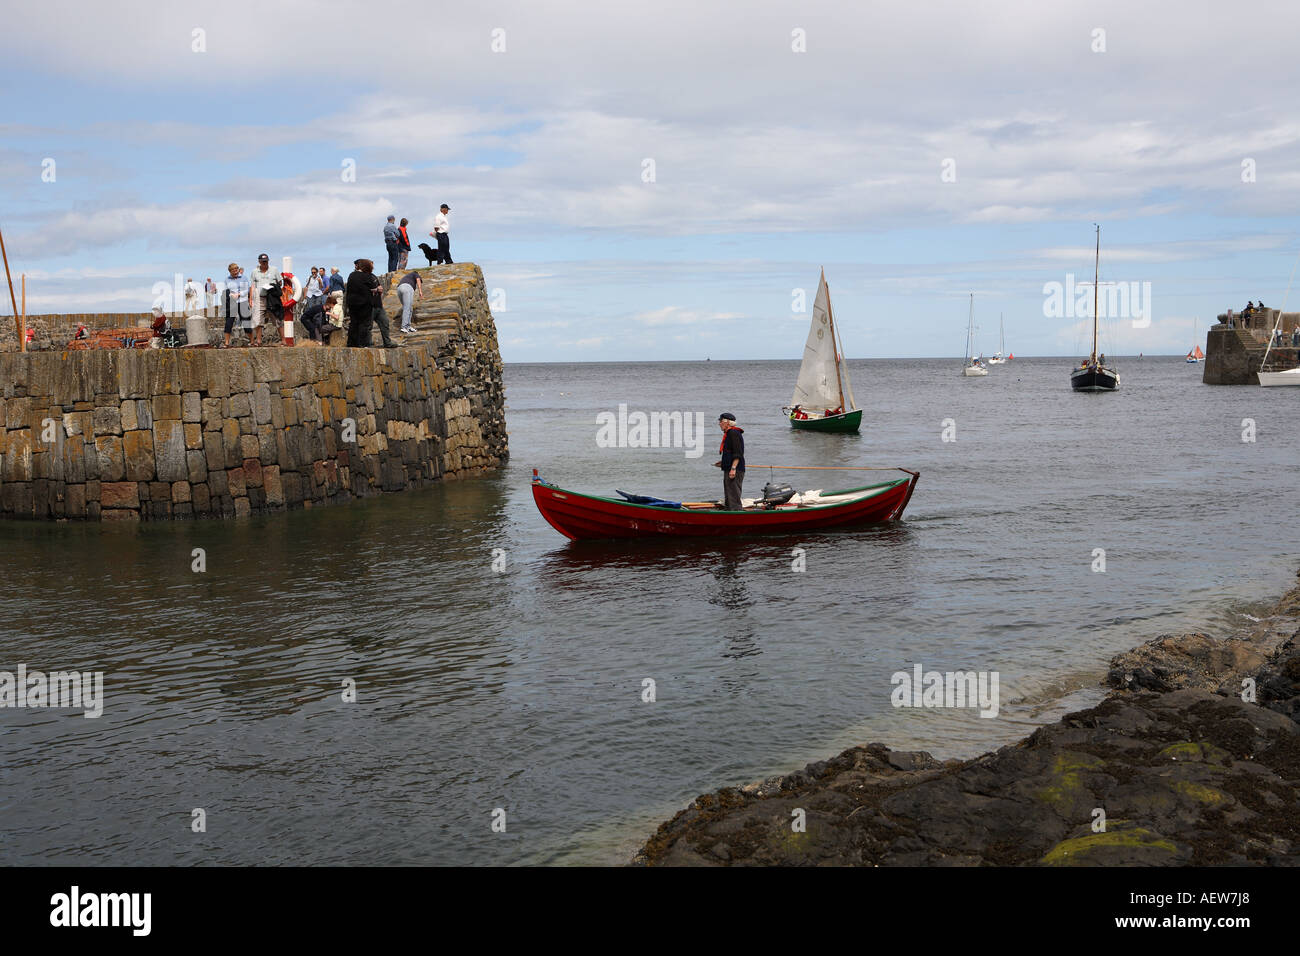 Yachts, petits canots, bateaux à rames près du mur du port de Portsoy.Scottish Boat Festival, Moray Firth, Morayshire, Écosse, Royaume-Uni Banque D'Images